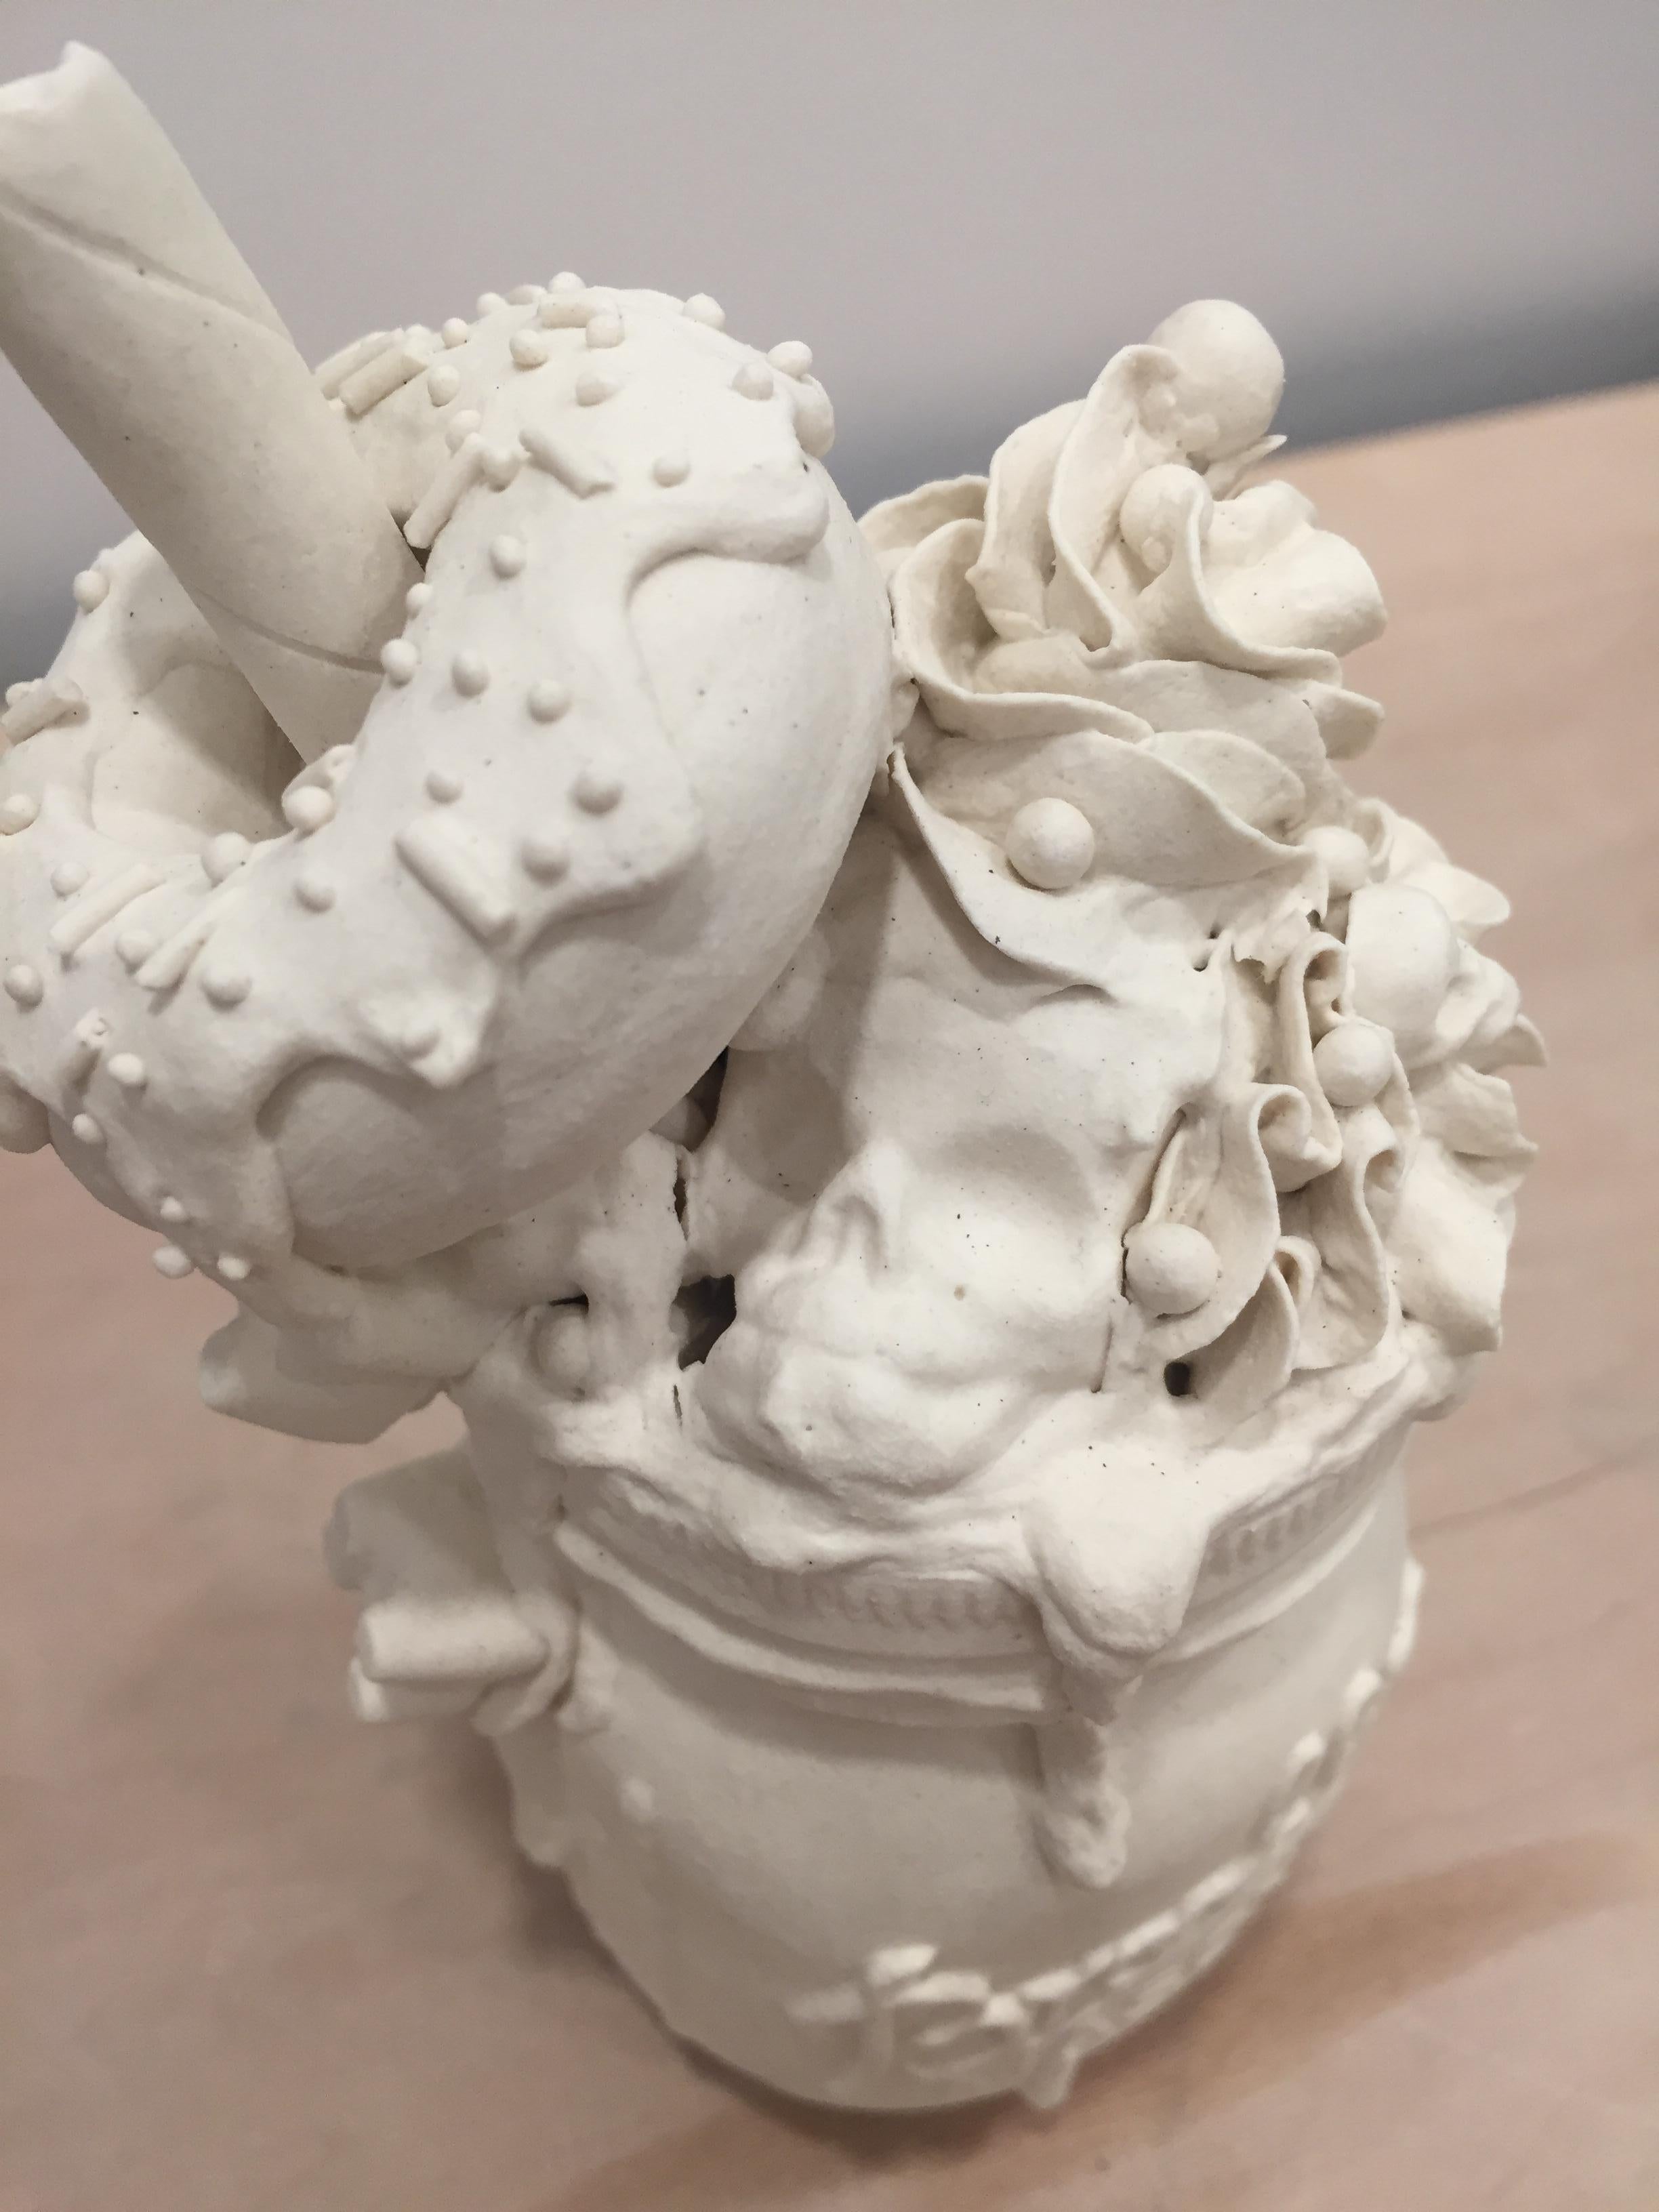 La jarre à crème glacée III - Sculpture de Jacqueline Tse